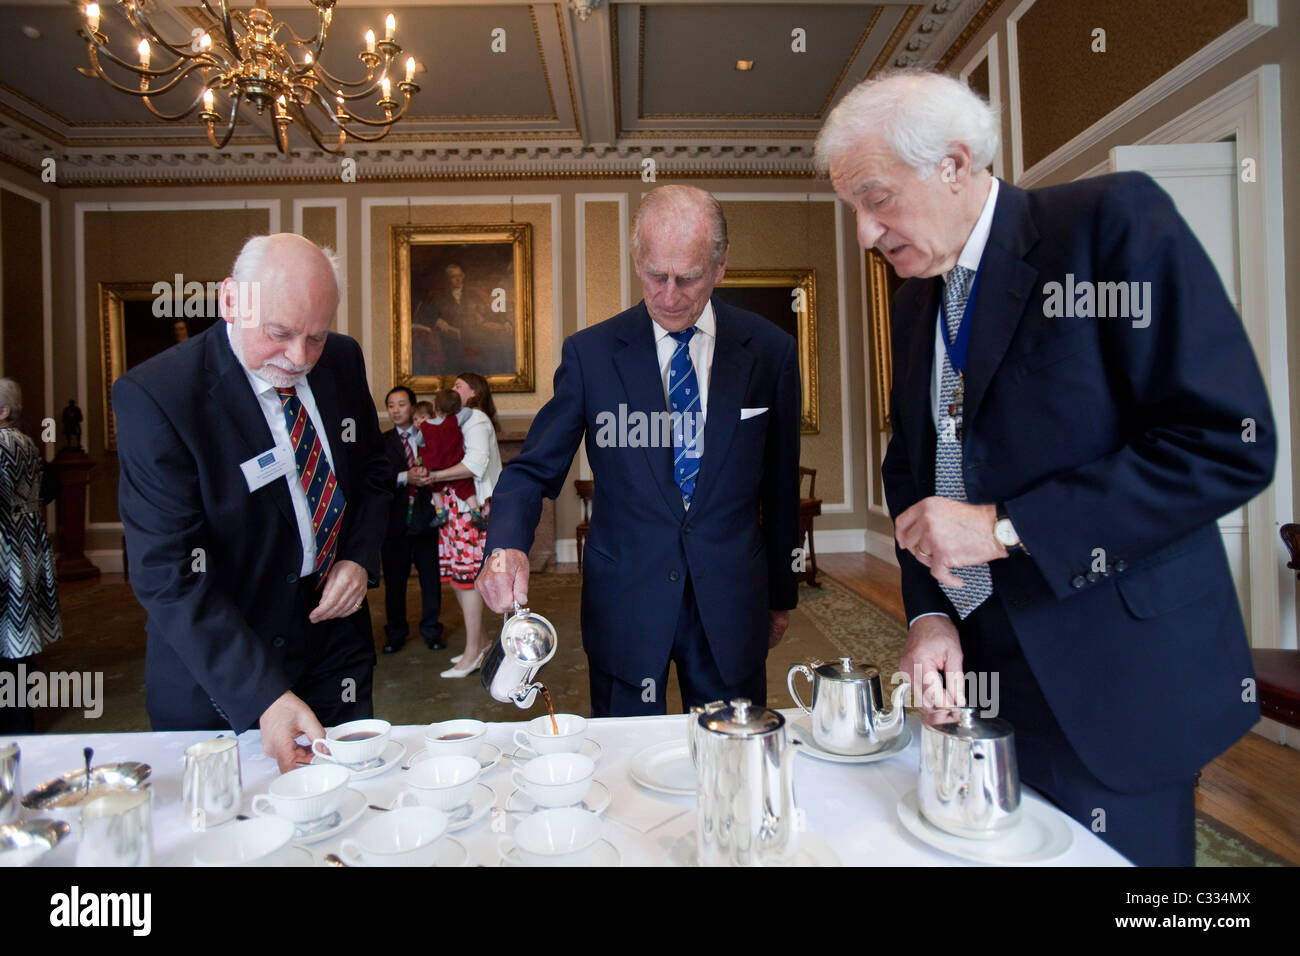 Seine königliche Hoheit Herzog von Edinburgh, Prinz Philip, gießt Tee für sich und andere bei der Royal Society of Edinburgh, wo er Schirmherr ist. Stockfoto